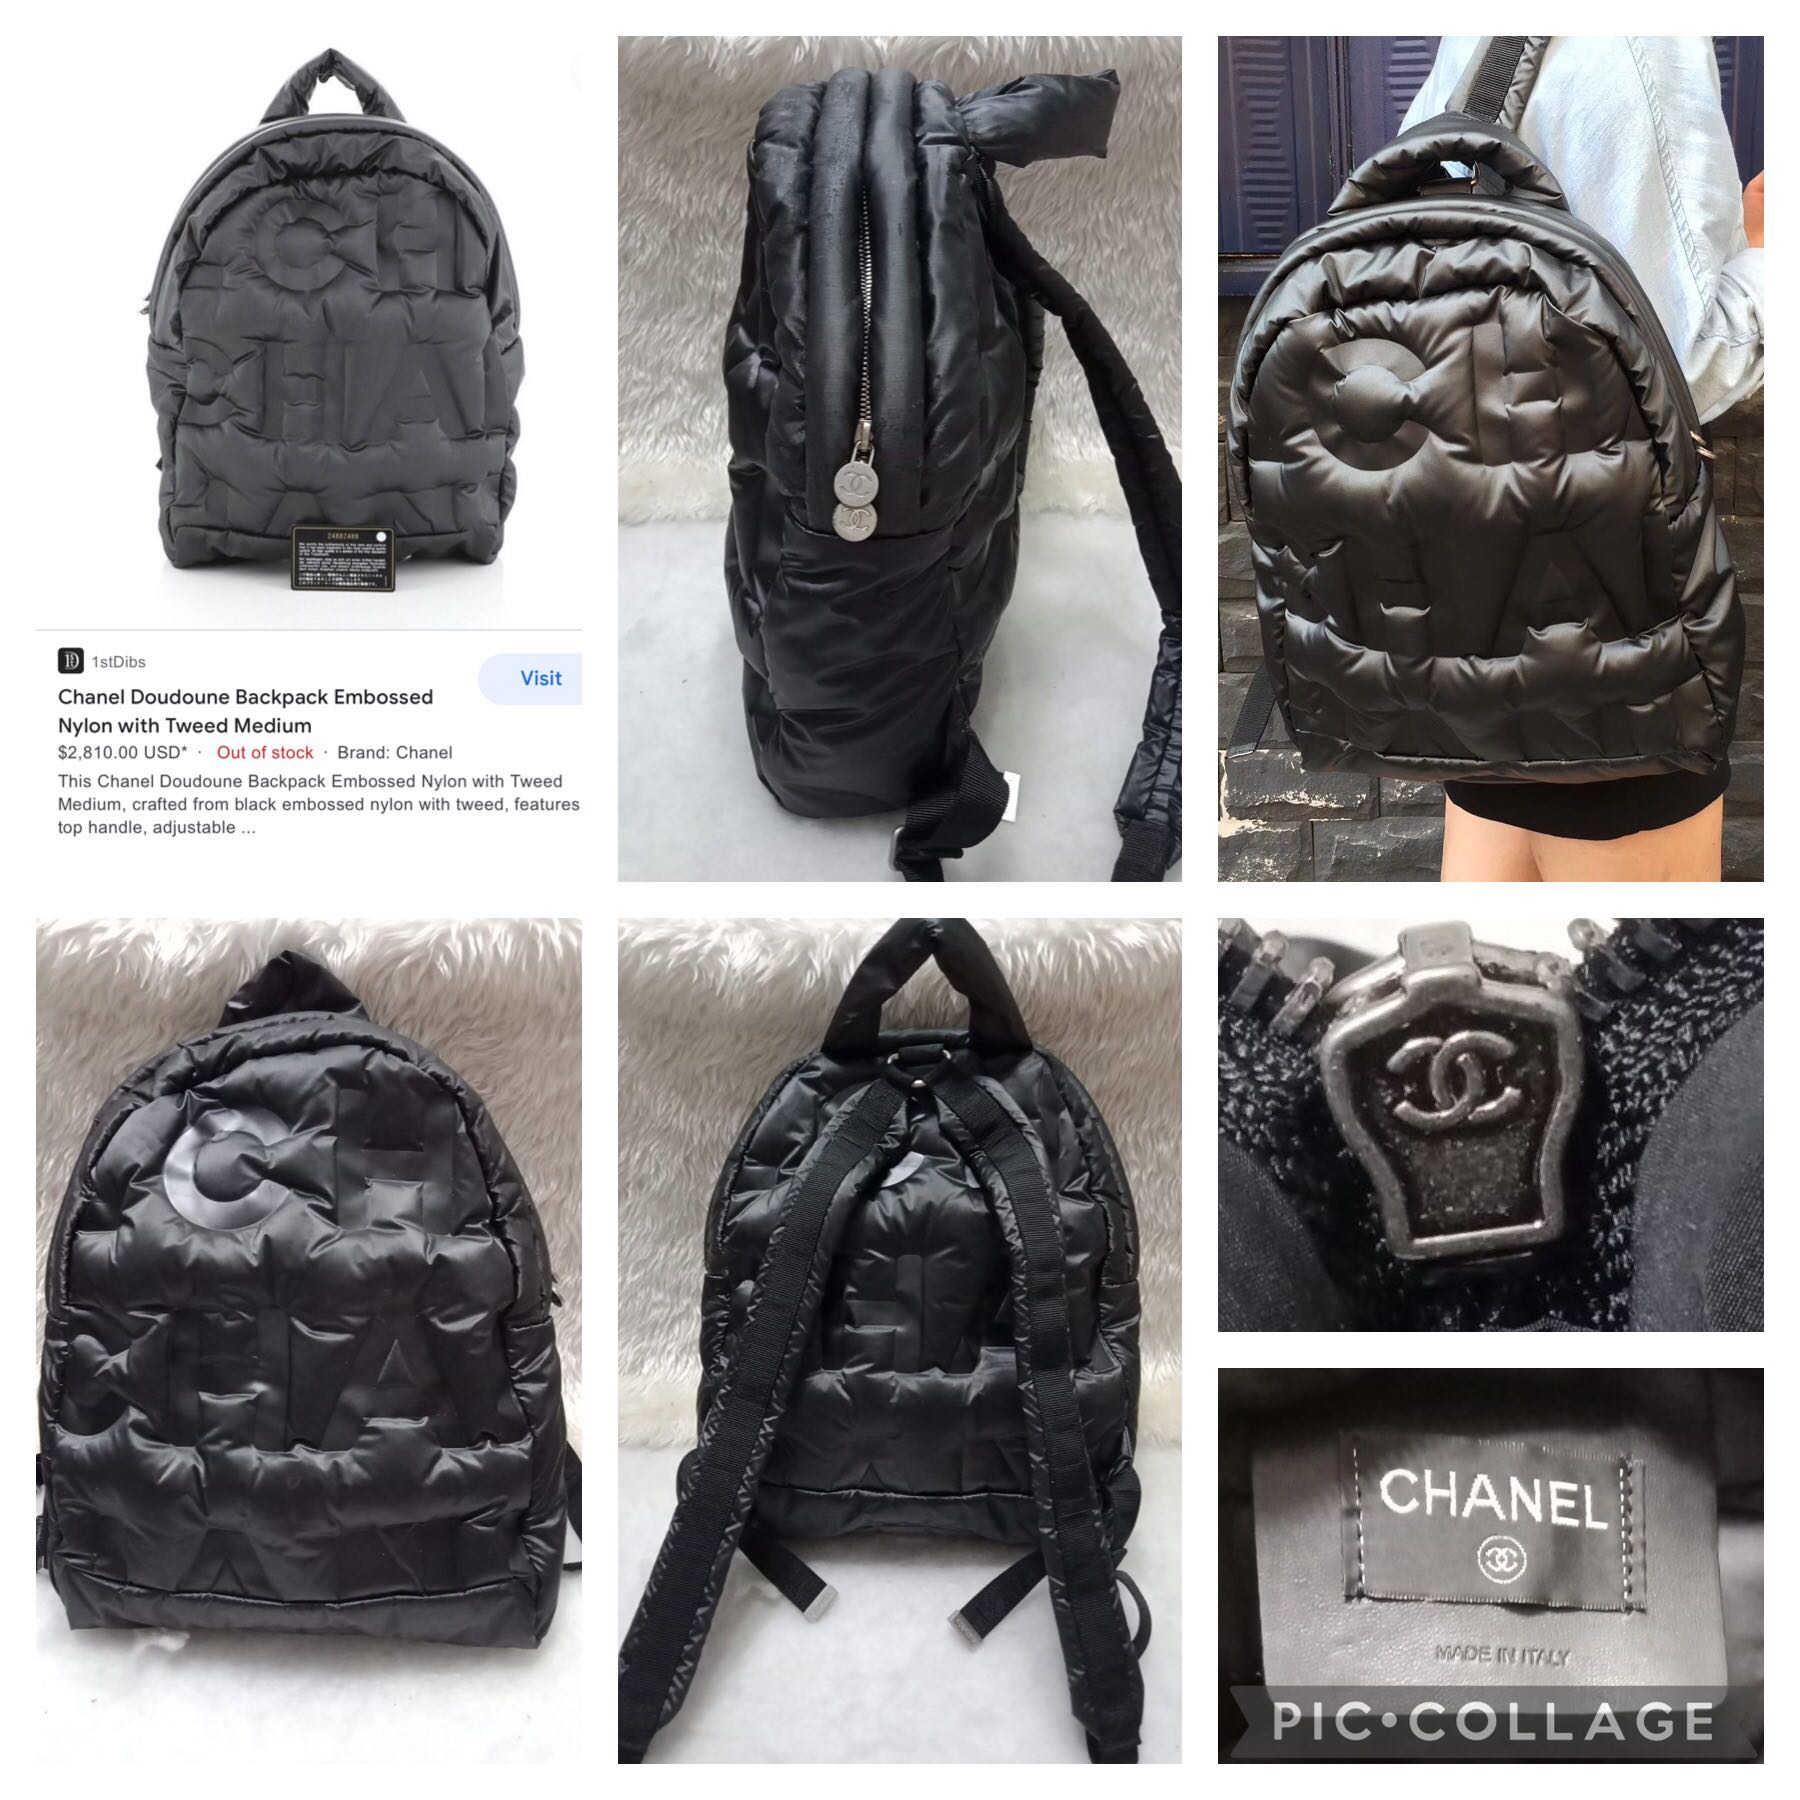 chanel doudoune backpack